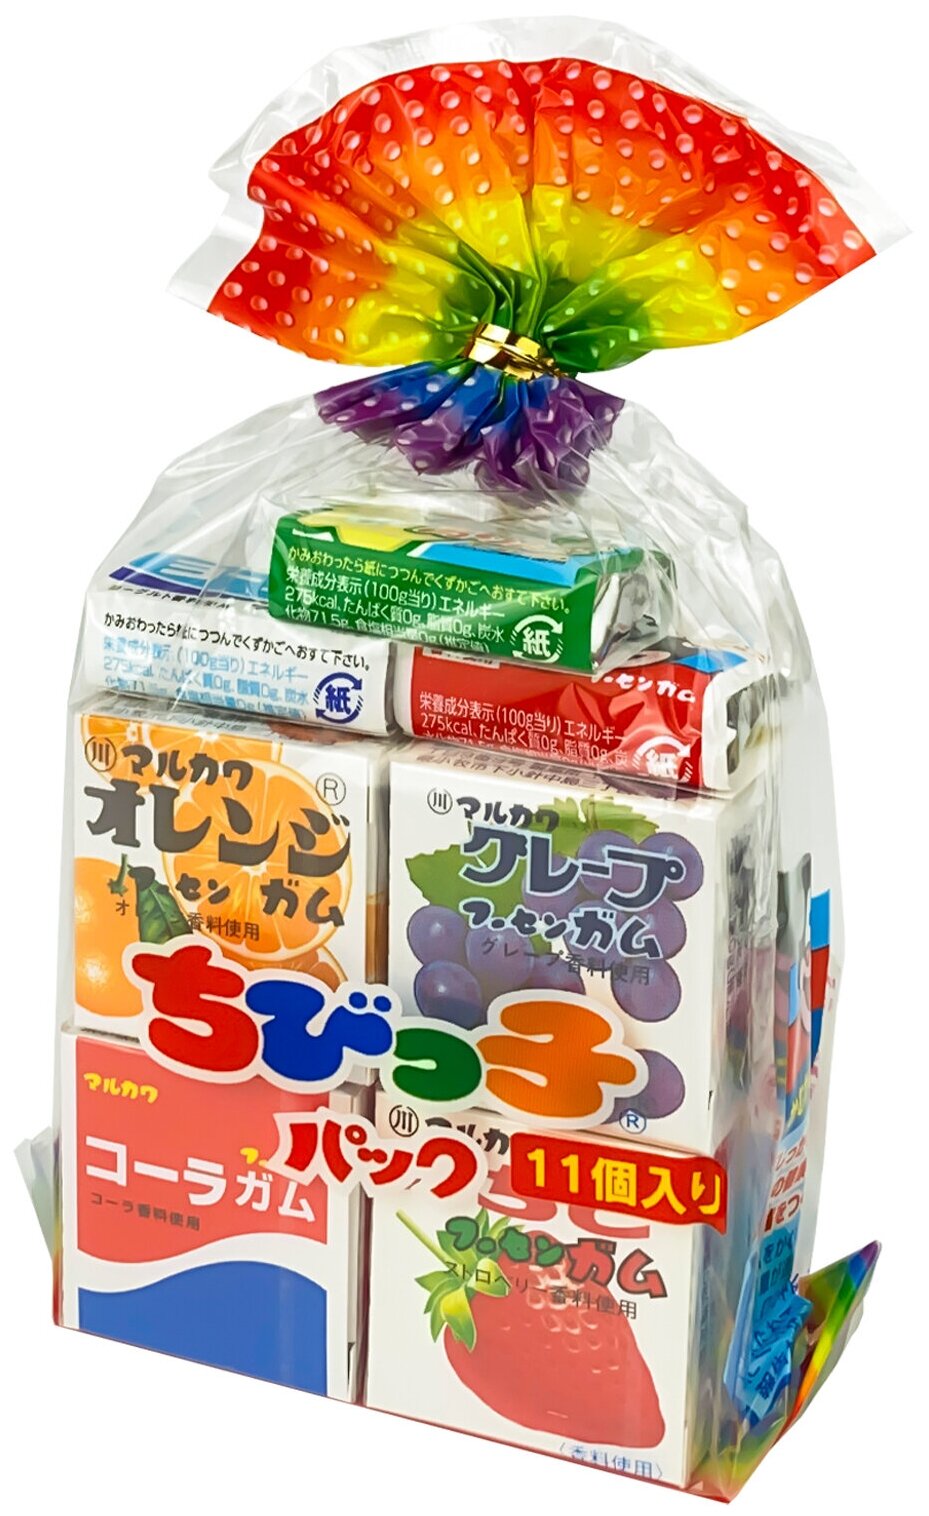 Жевательная резинка Марукава Ассорти из 11 жевательных резинок, 58,2 г, Япония /Японские сладости